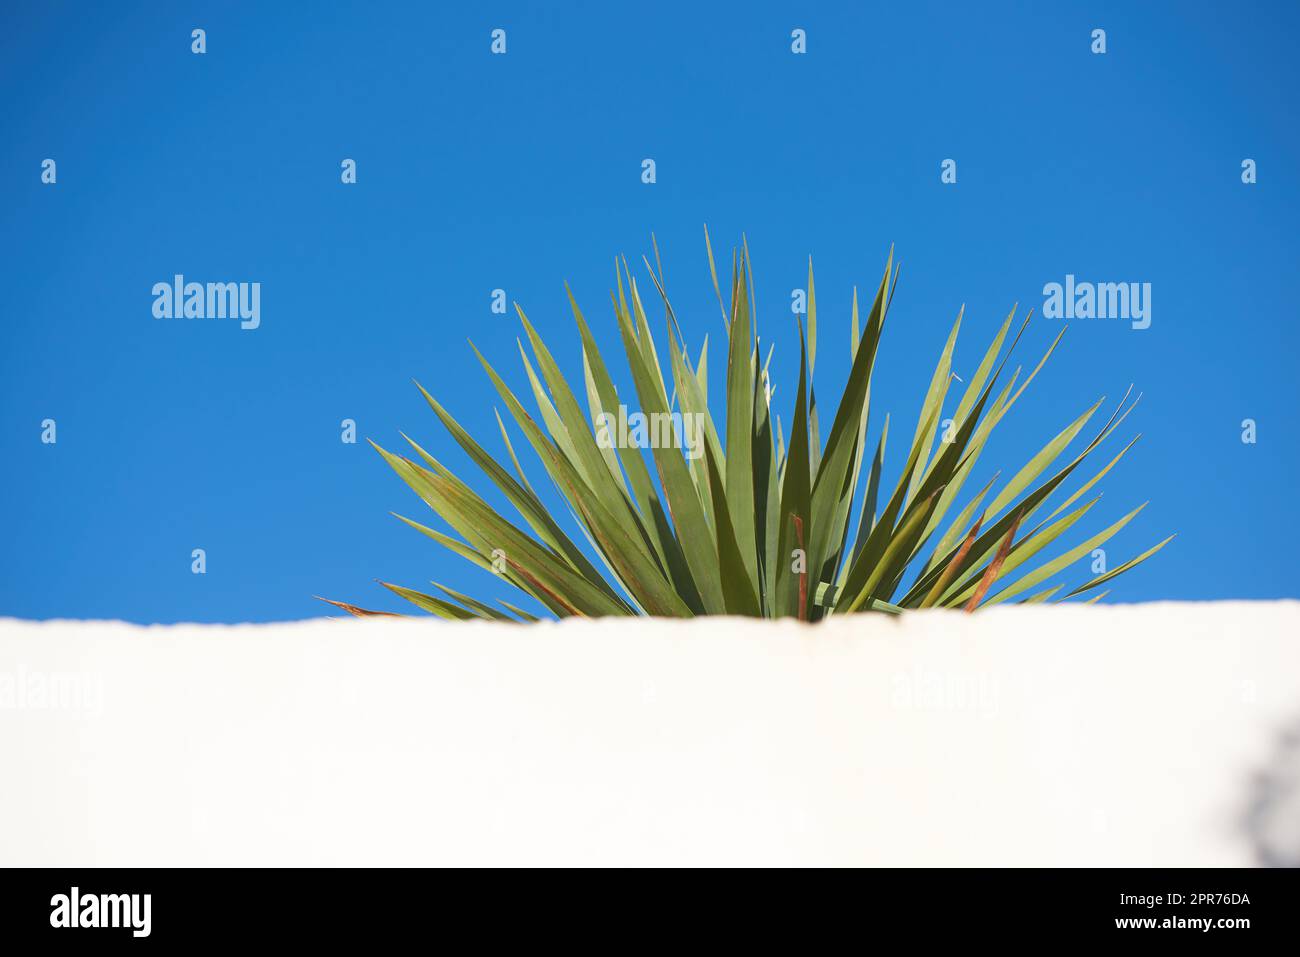 Yucca cresce sotto il blu chiaro con il cielo copyspace dietro un muro bianco. Foglie appuntite di una pianta ostruita che cresce all'esterno. Consigli utili per una succulenta vita all'aperto con spazio per le copie durante l'estate o la primavera Foto Stock